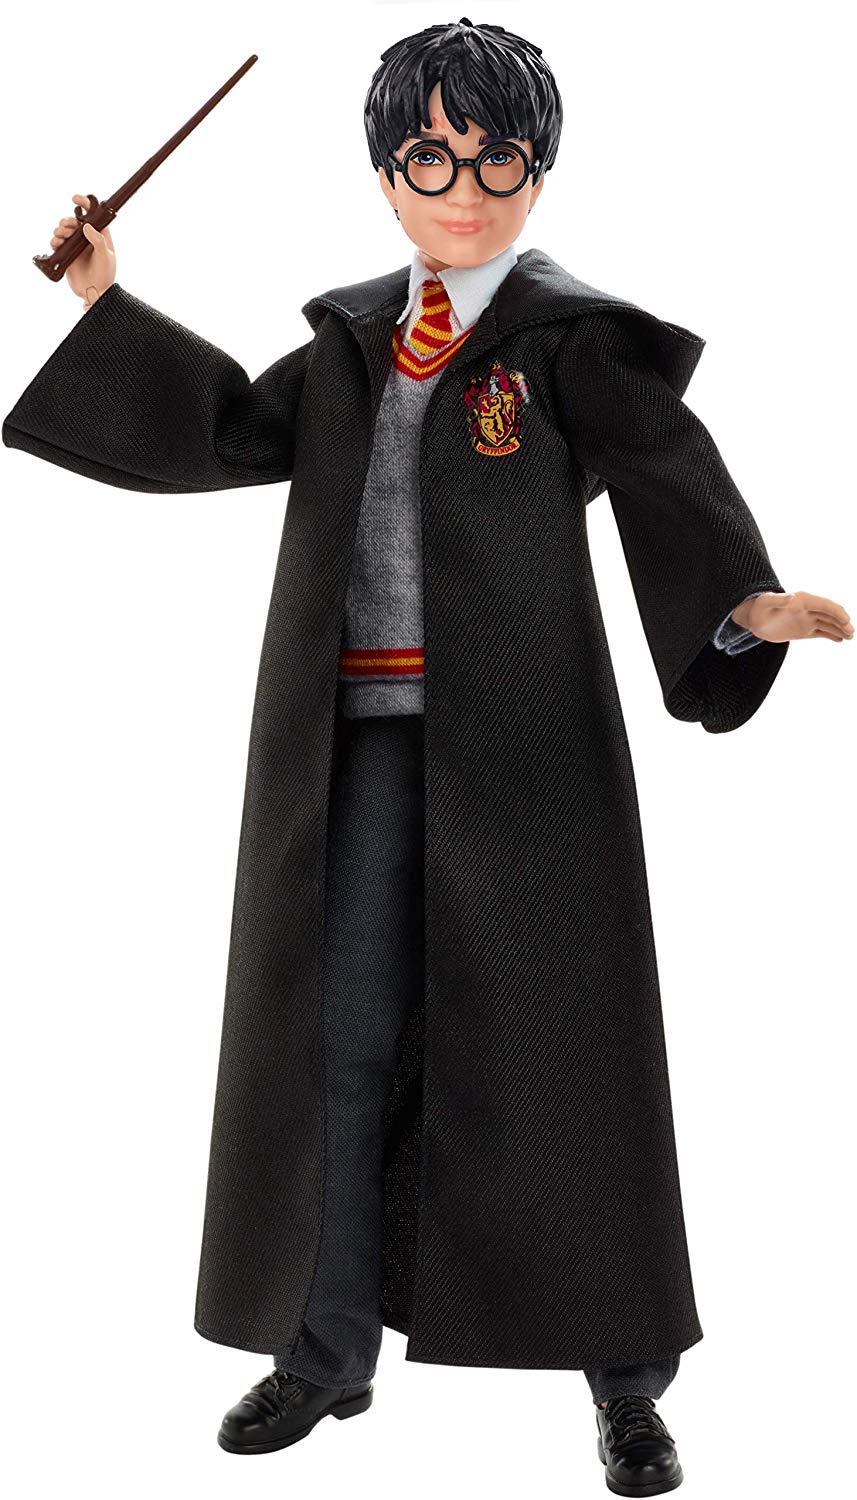 Boneco Harry Potter Articulado Mattel 25cm Oficial Licenciado